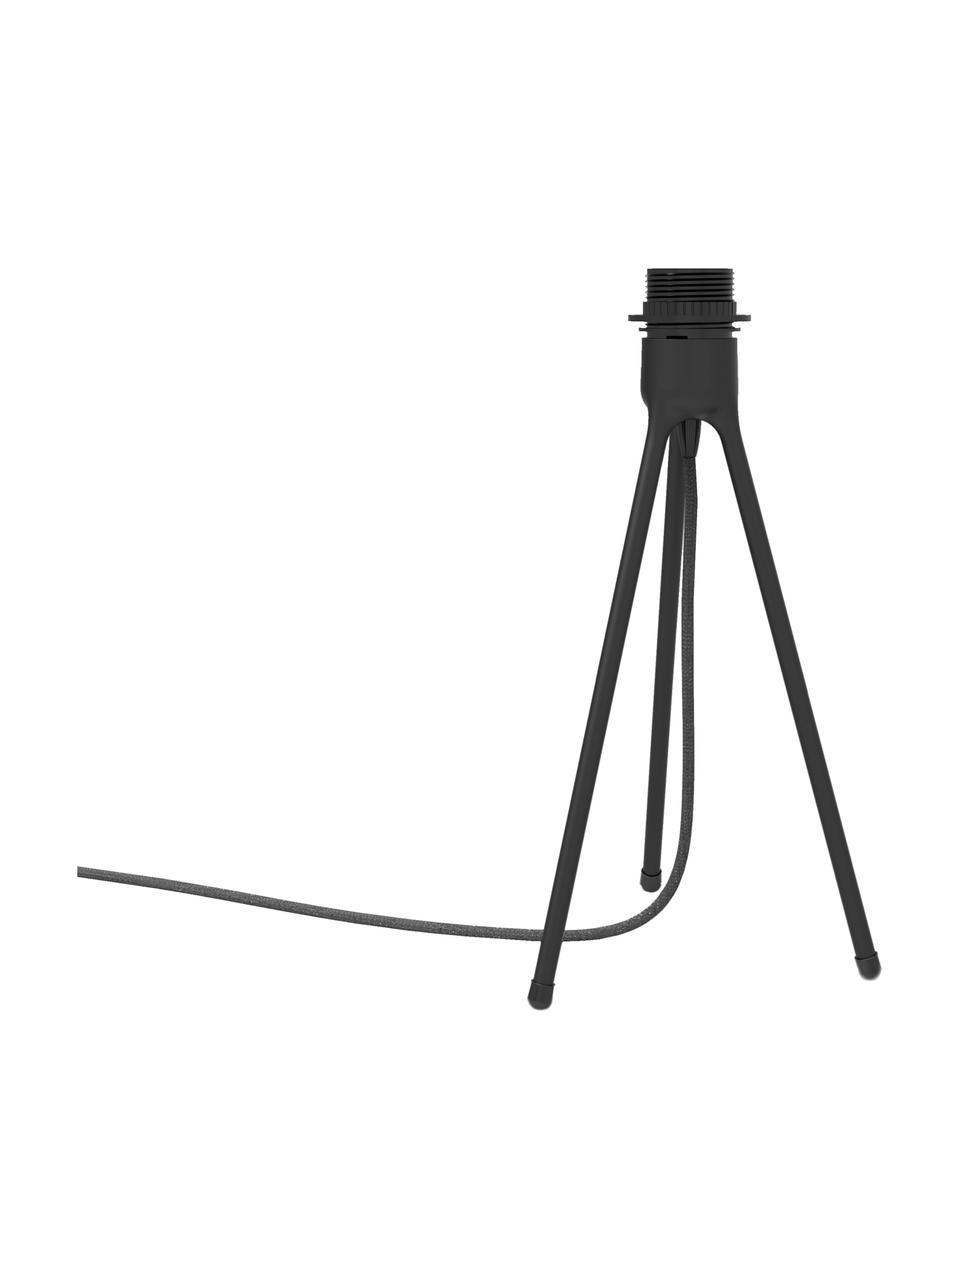 Tischleuchtenfuß Tripod, Lampenfuß: Aluminium, beschichtet, Schwarz, Ø 19 x H 36 cm